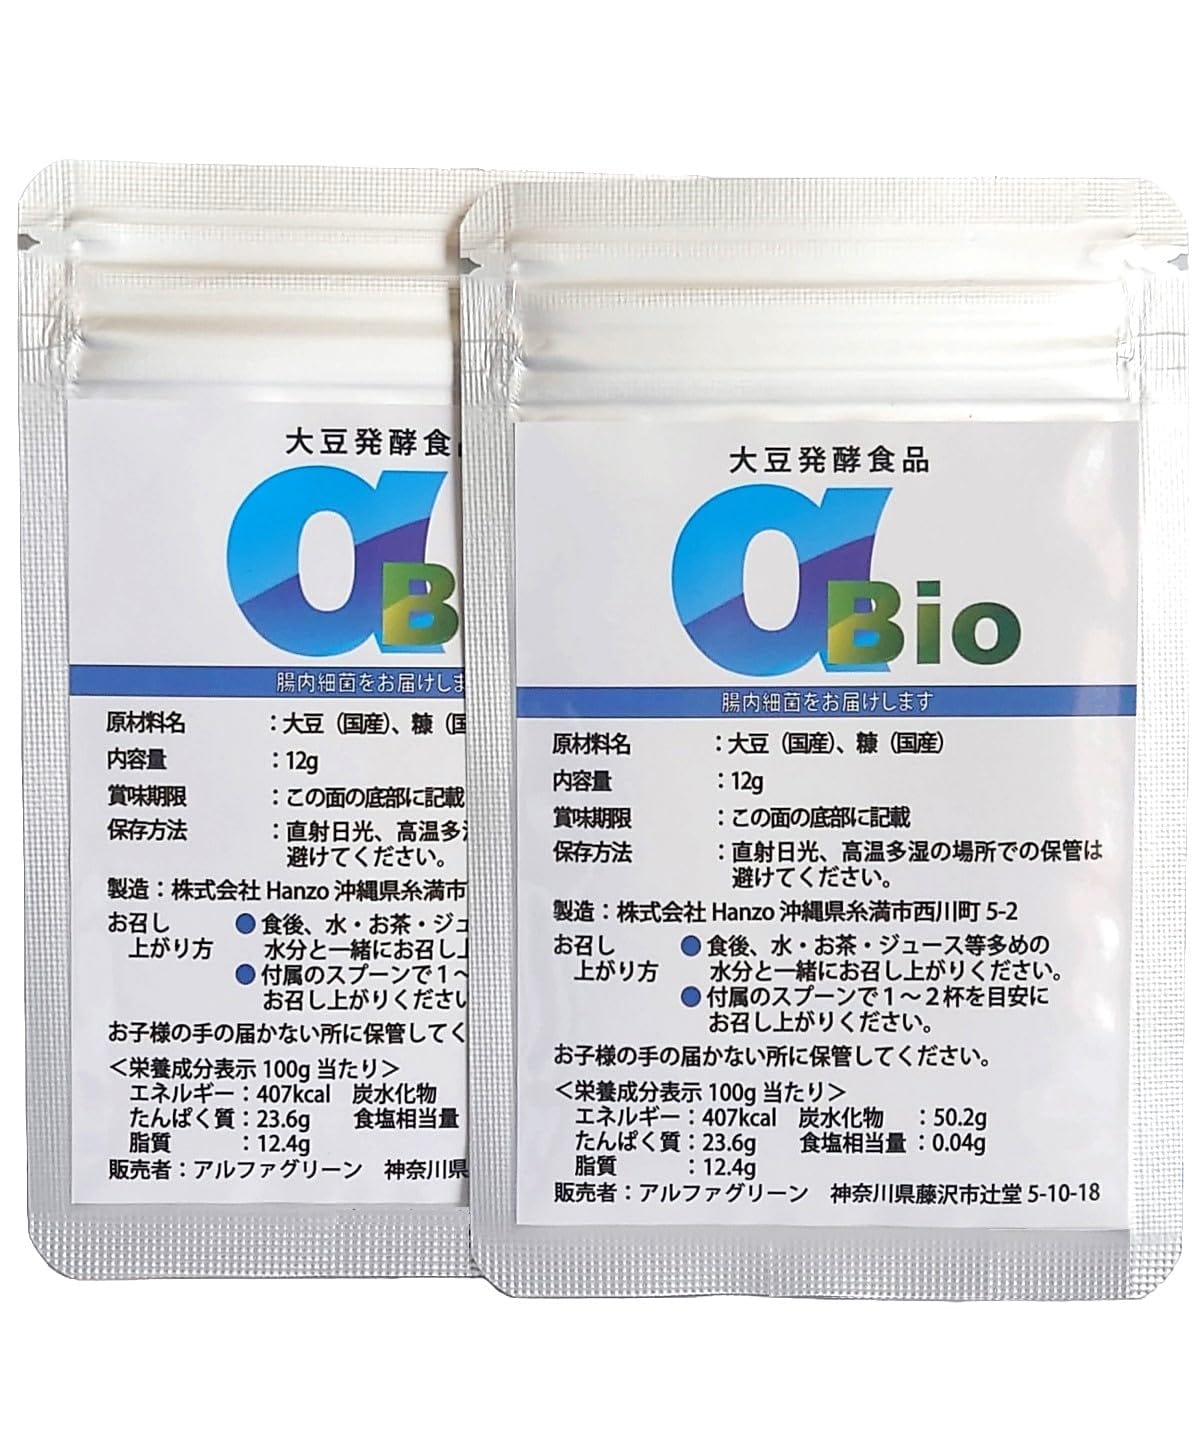 αBio アルファビオ 大豆発酵食品 土壌菌 乳酸菌 12g 2個セット